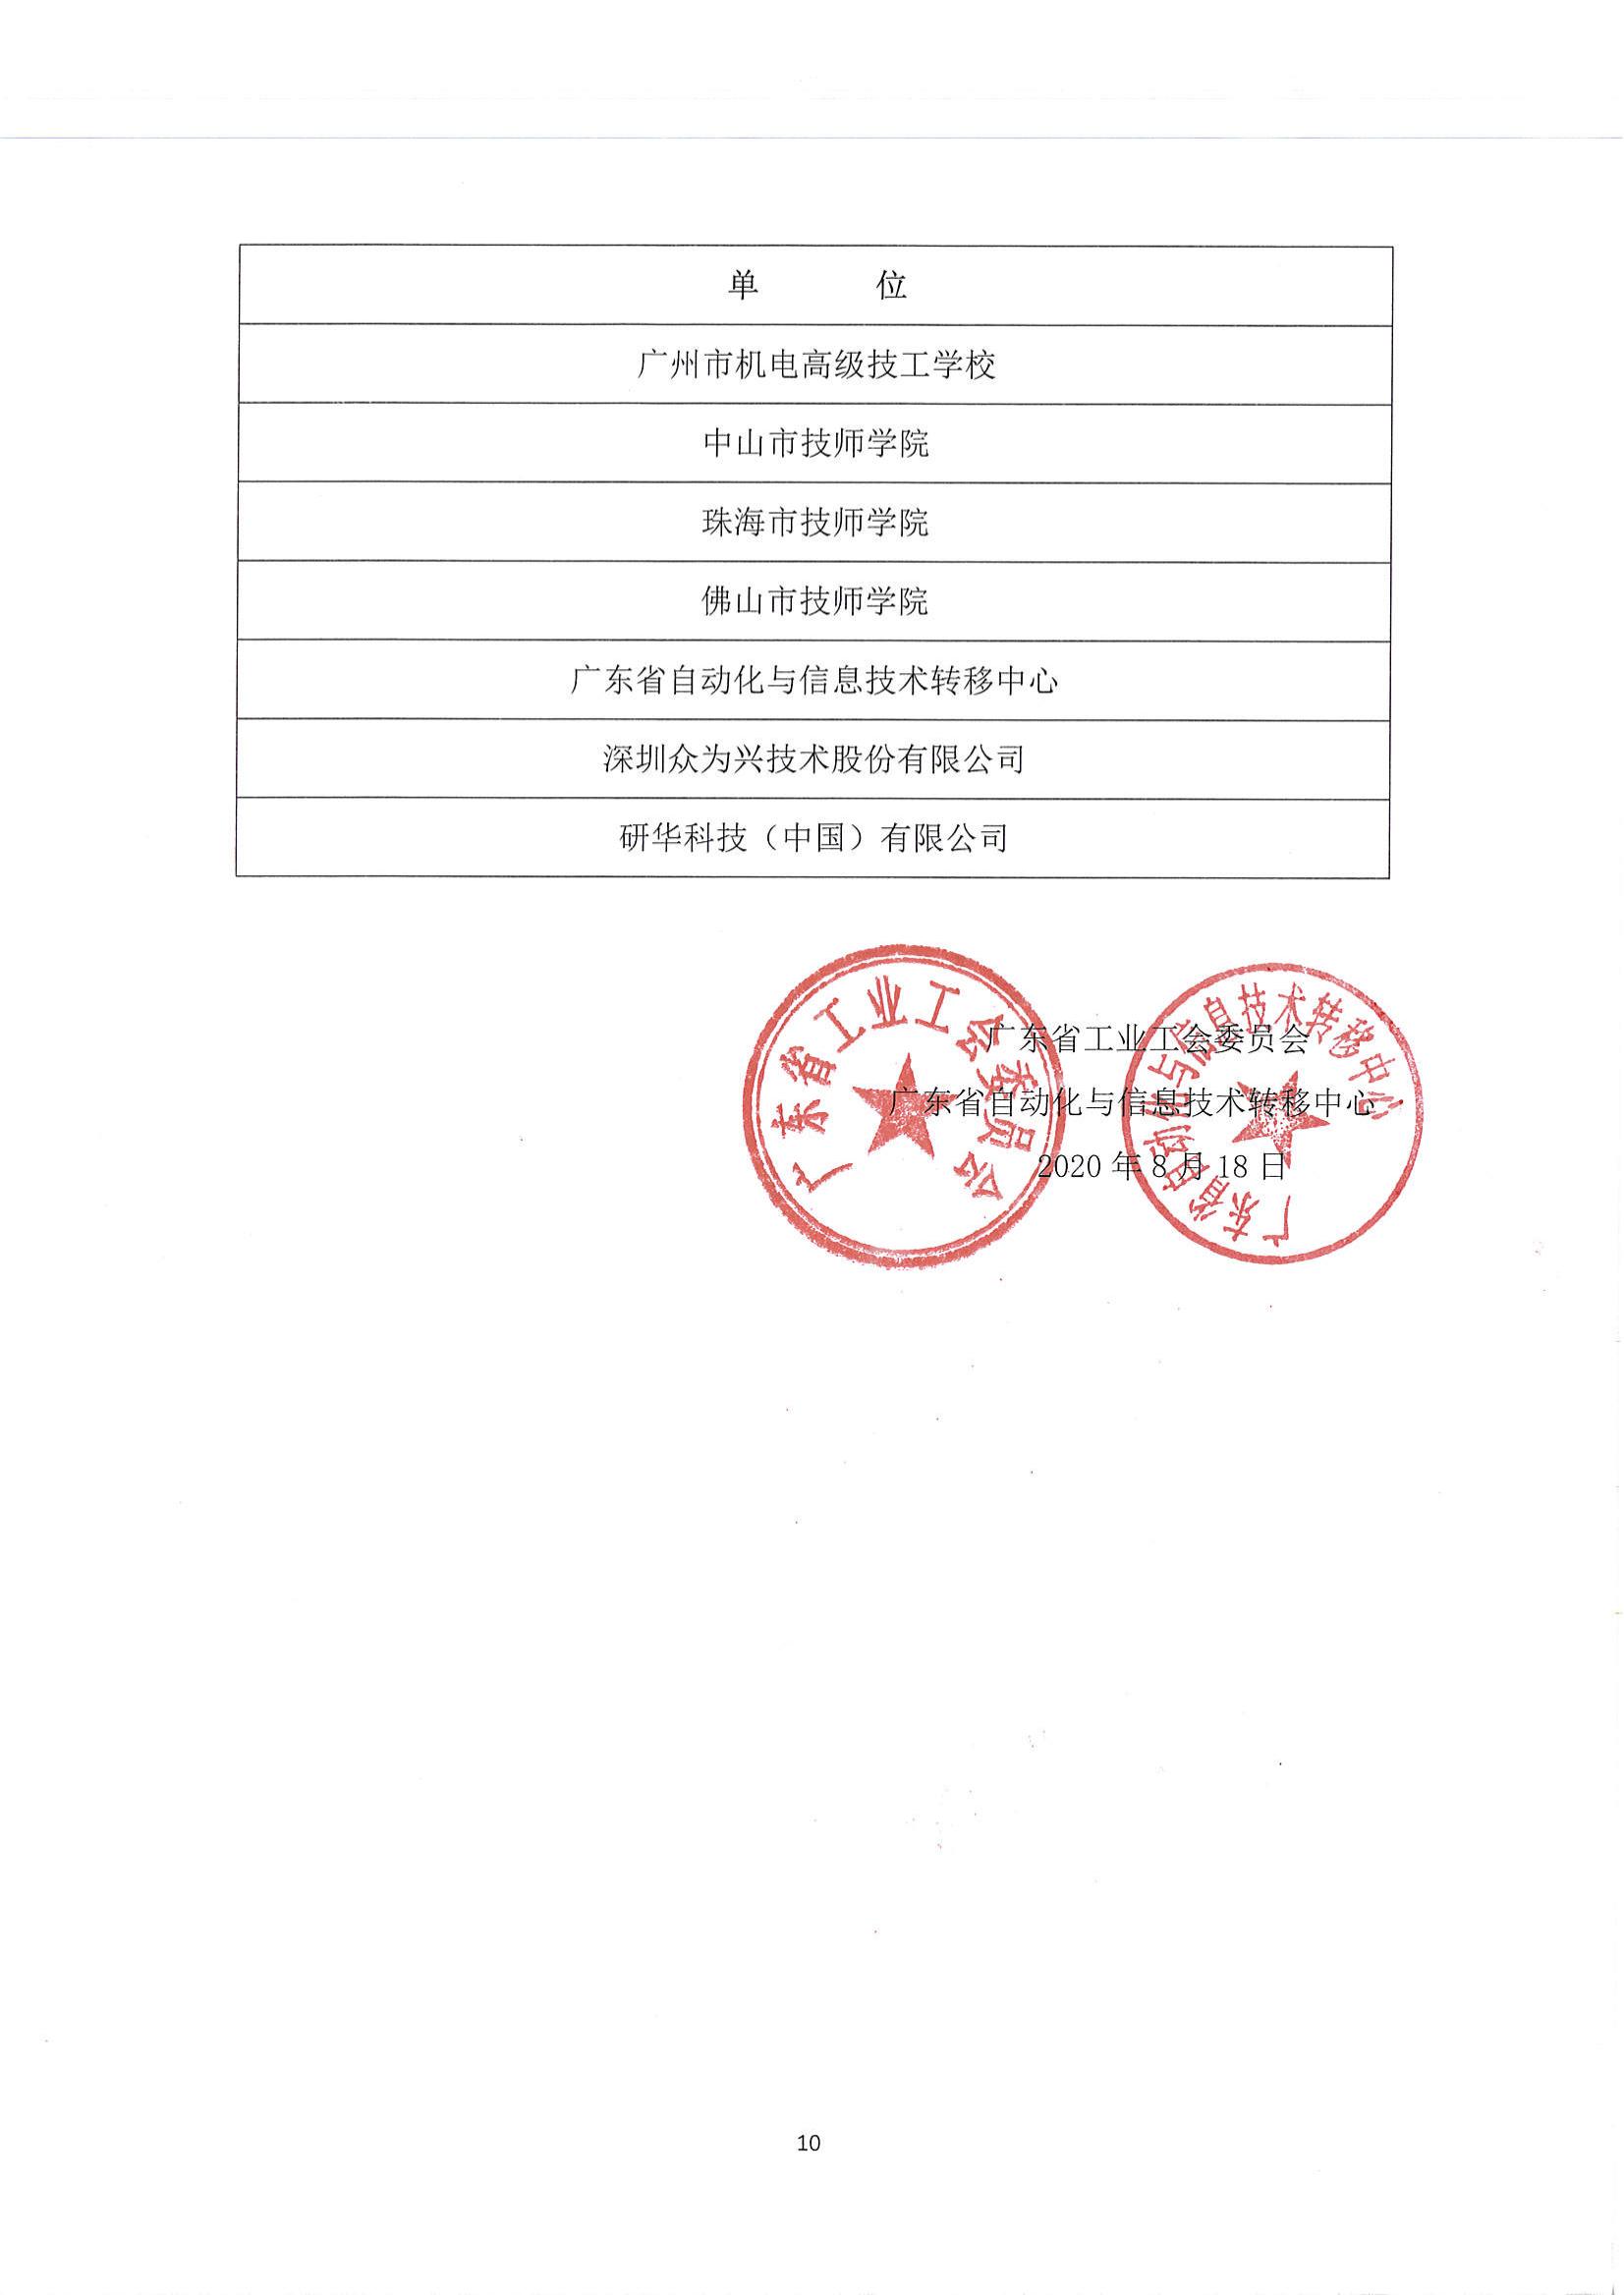 广东省第一届职业技能大赛--广东省机电一体化职业技能竞赛获奖名单公布_09.jpg